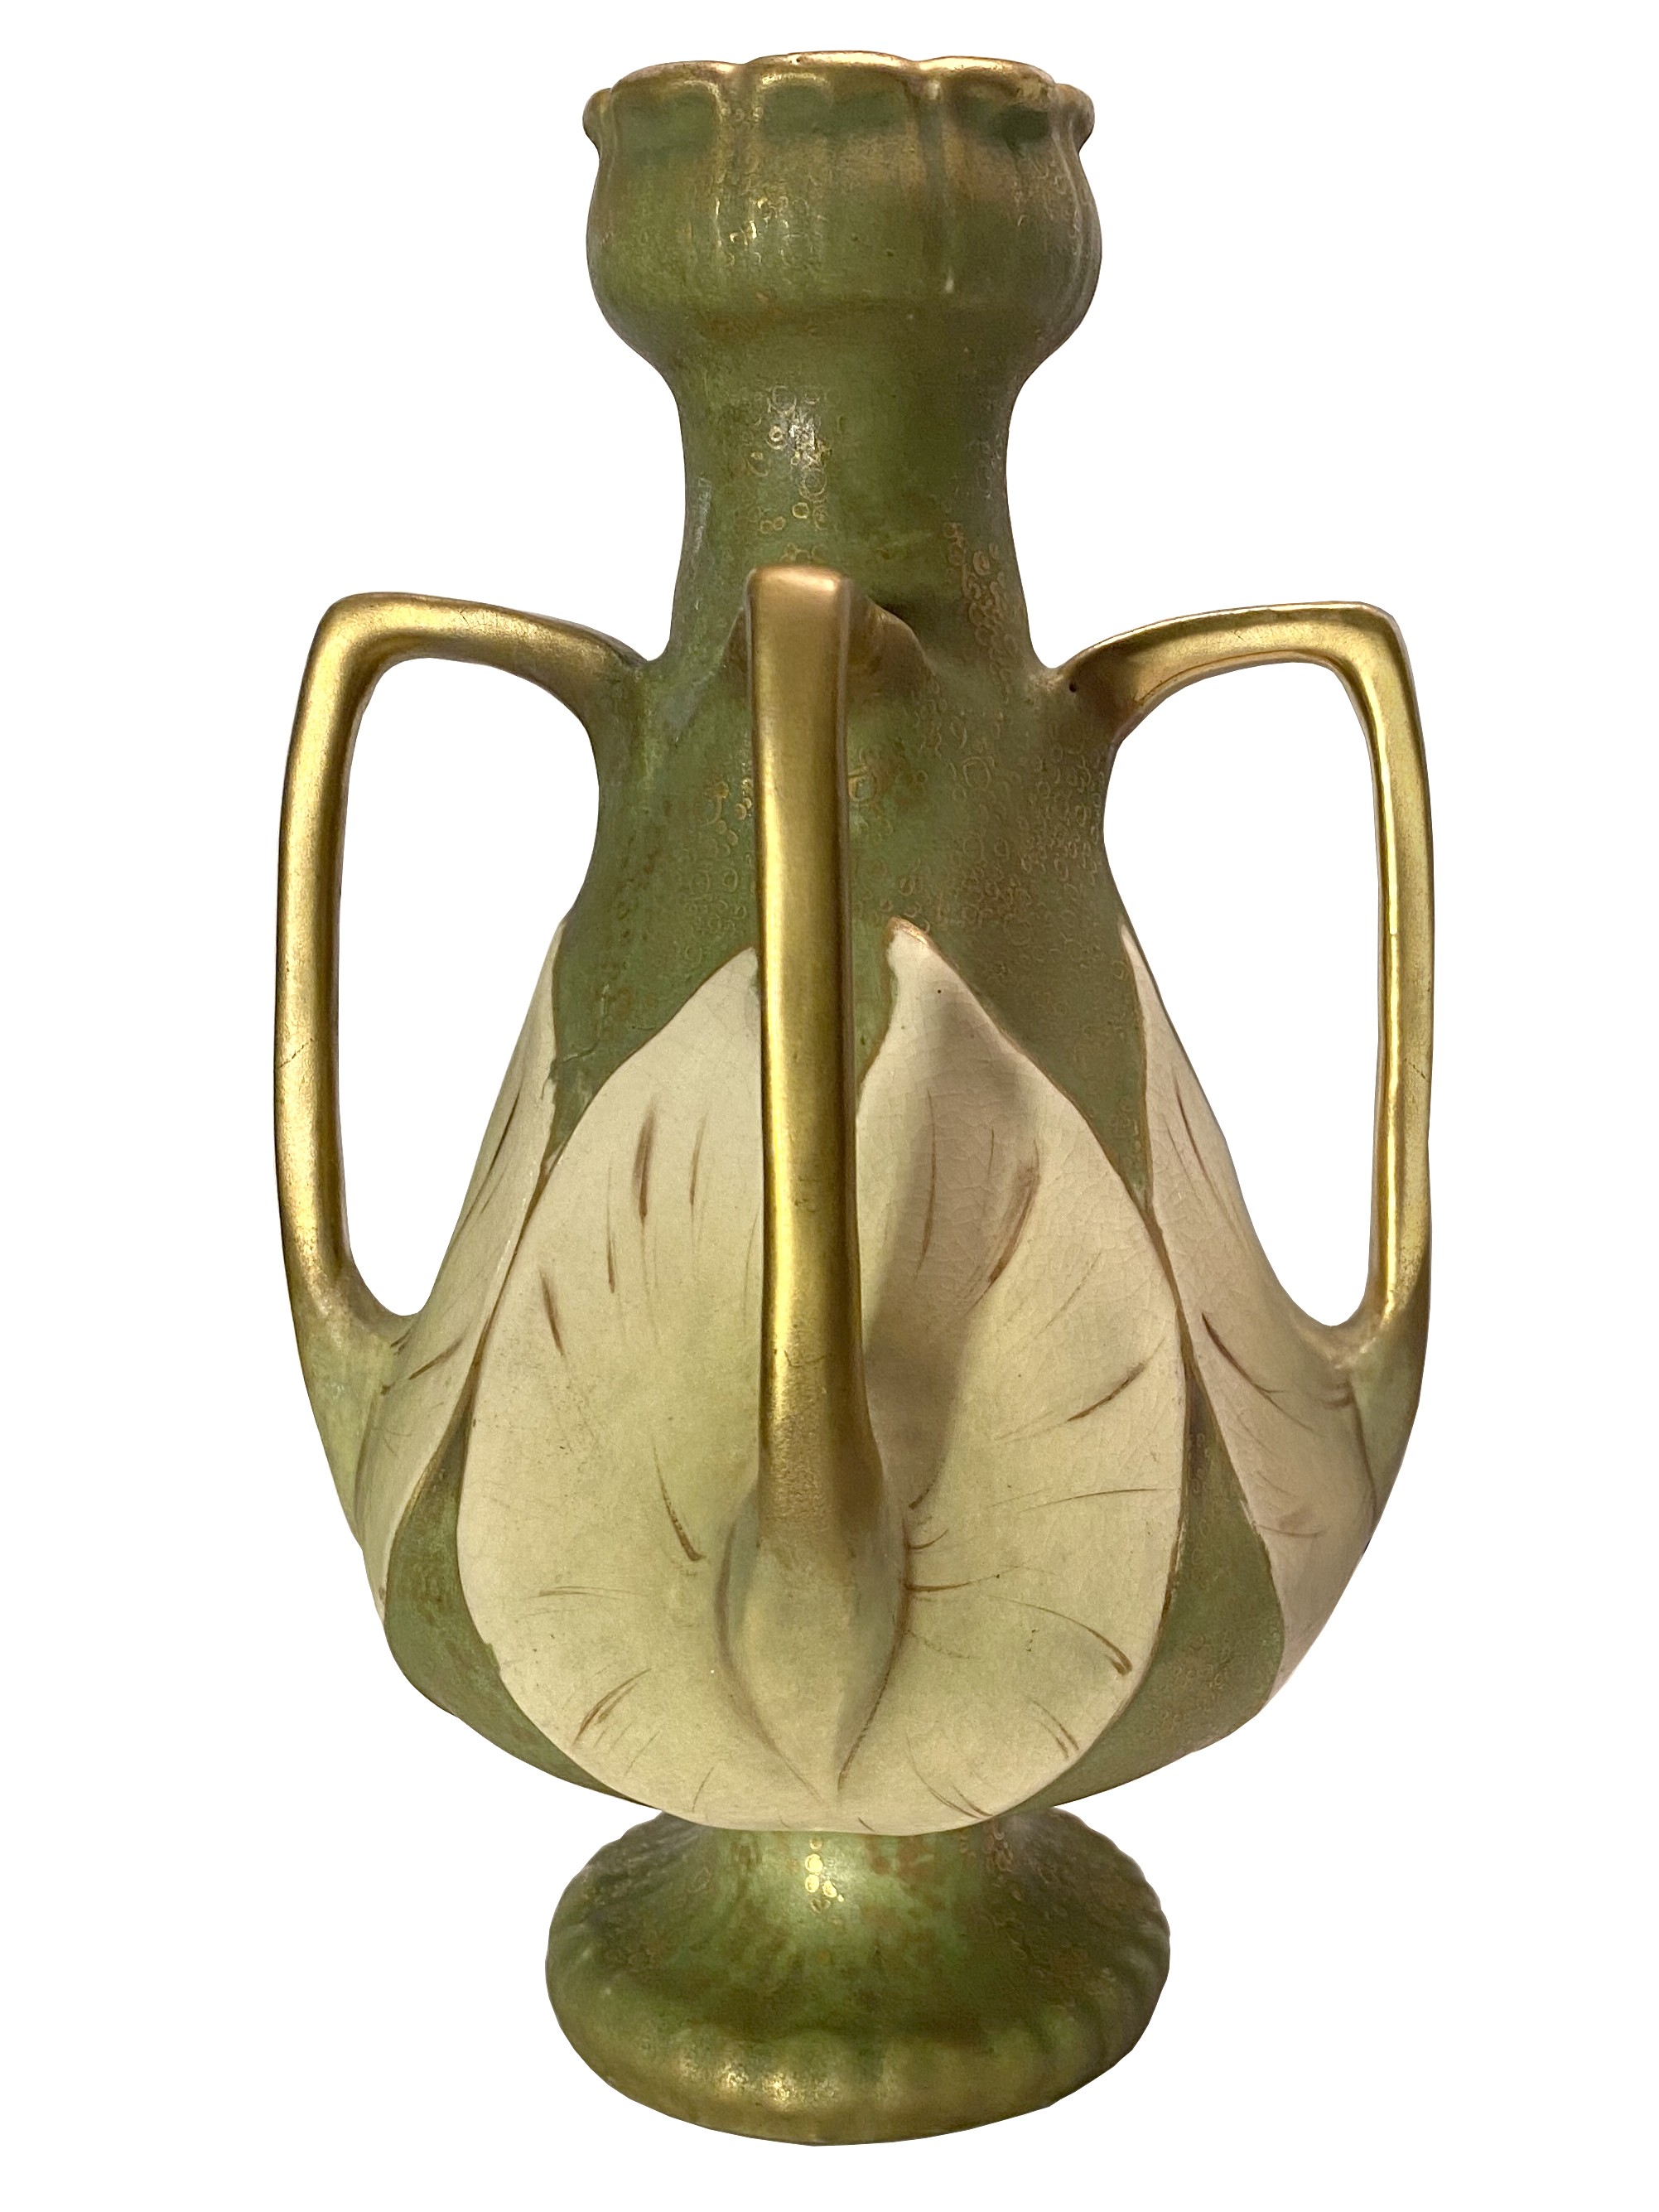 Amphora Art Nouveau Lilly Pad Vase